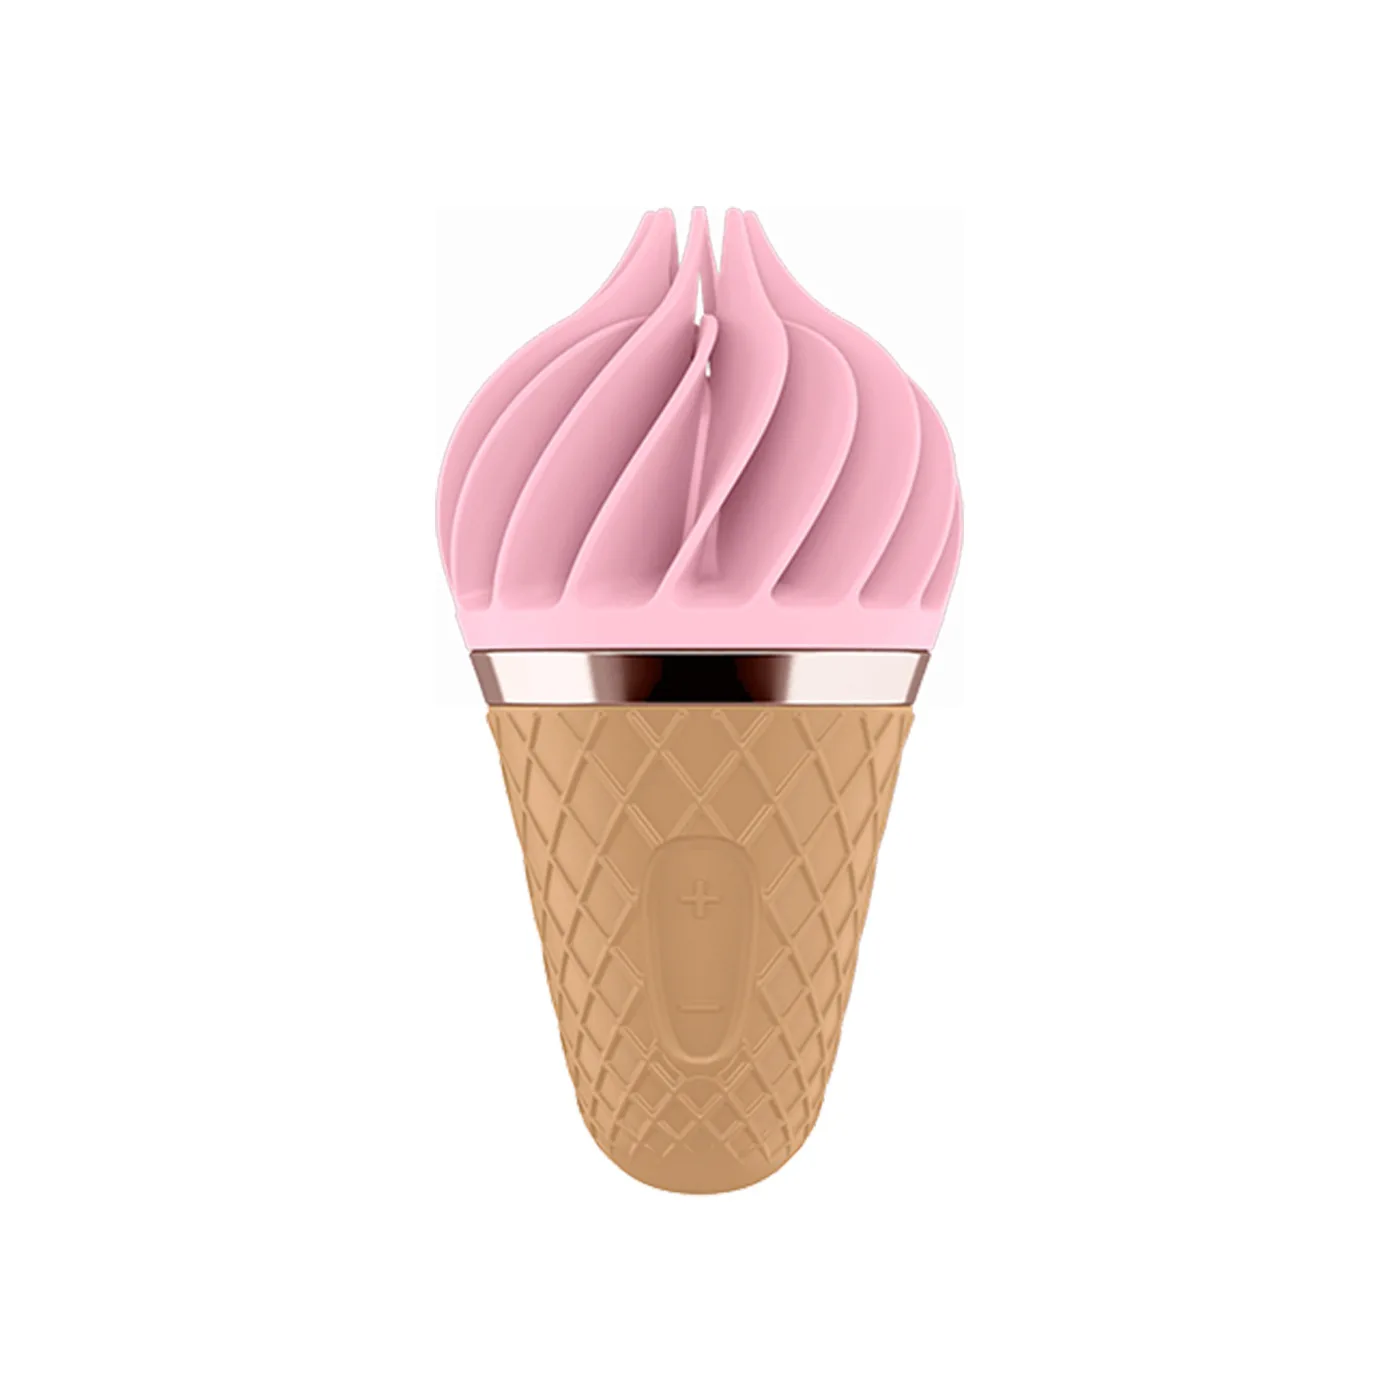 Wholesale Unique design Ice cream cone sex vibrator toys for woman soft Silica gel clitoris stimulator mini adult toys From m.alibaba